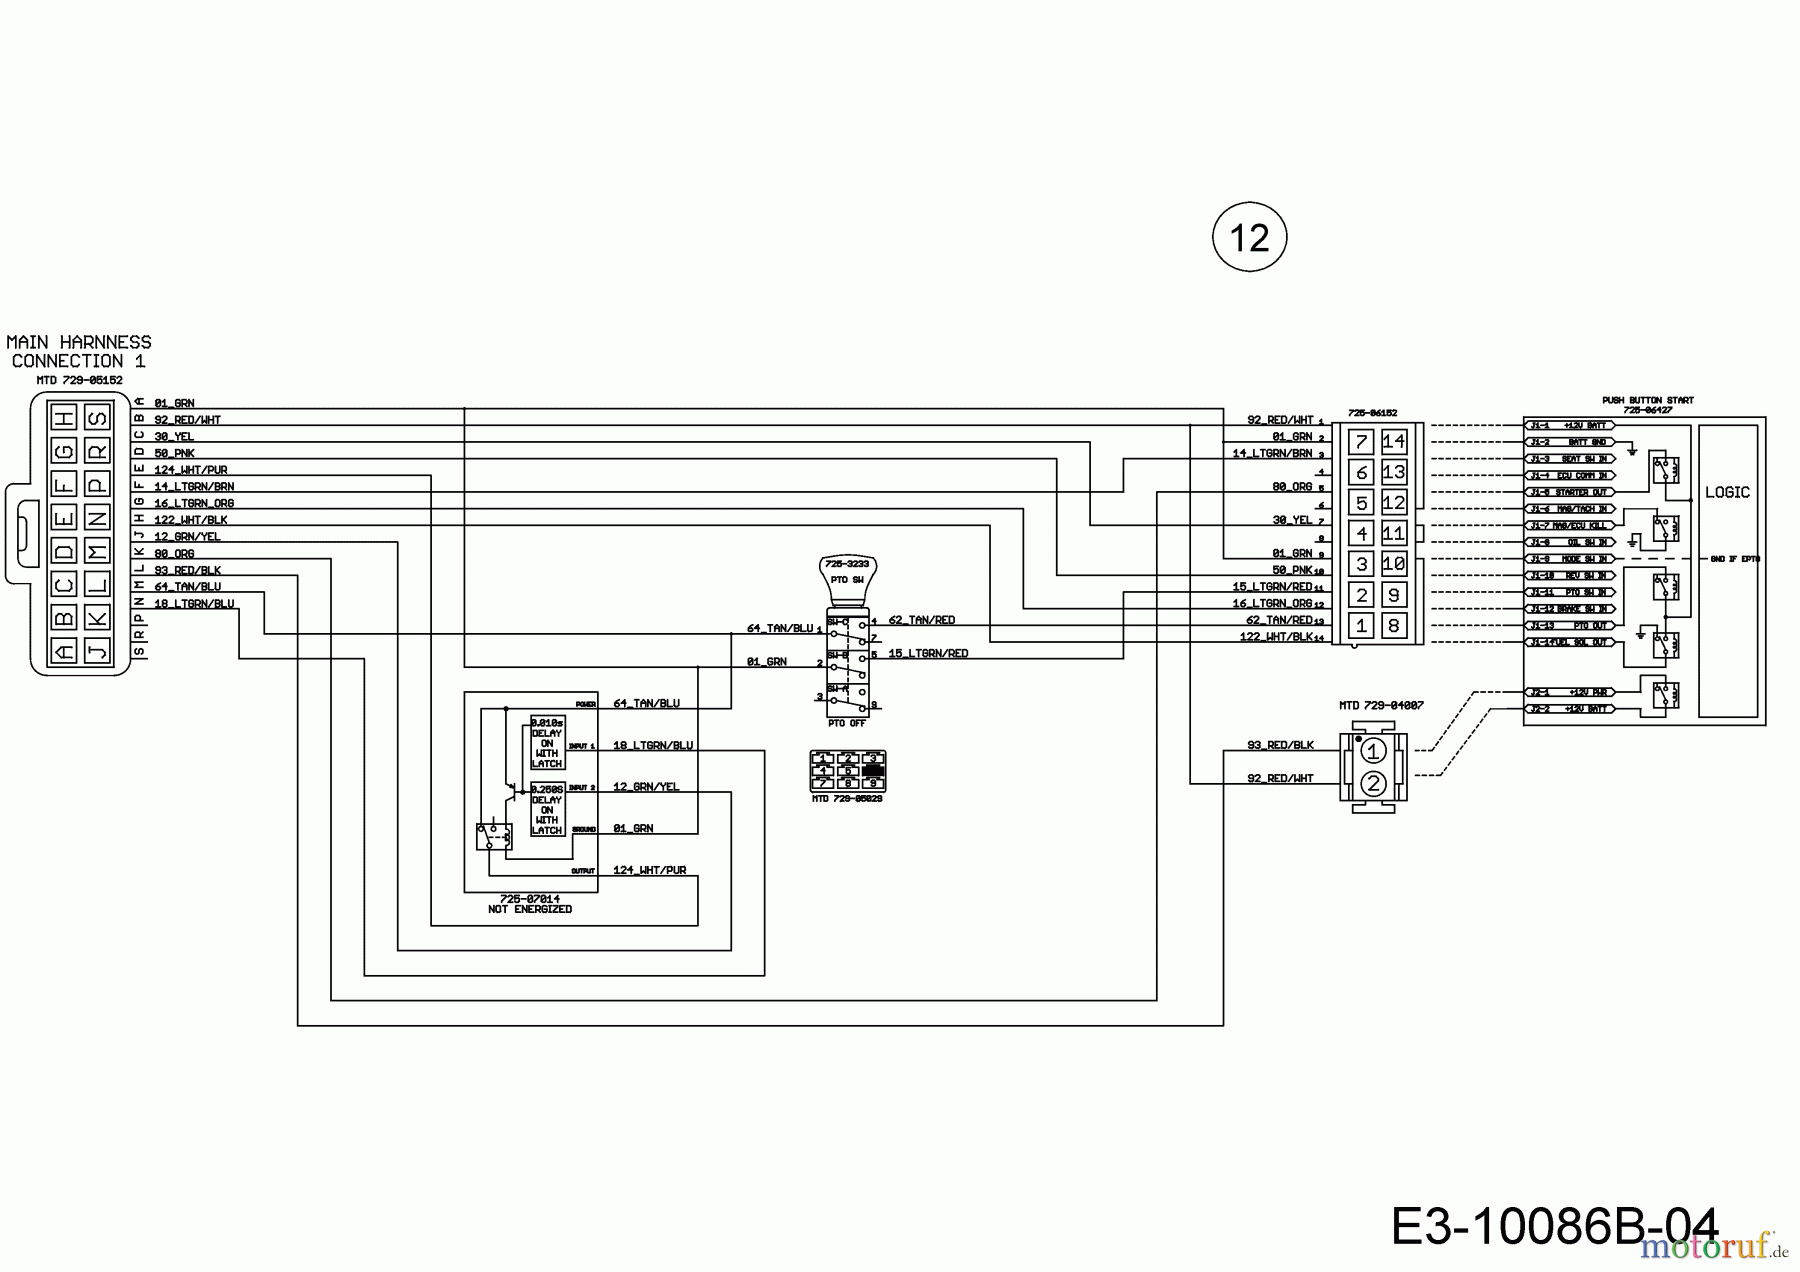  Wolf-Garten Rasentraktoren 106.220 H 13CAA1VR650  (2020) Schaltplan Elektromagnetkupplung